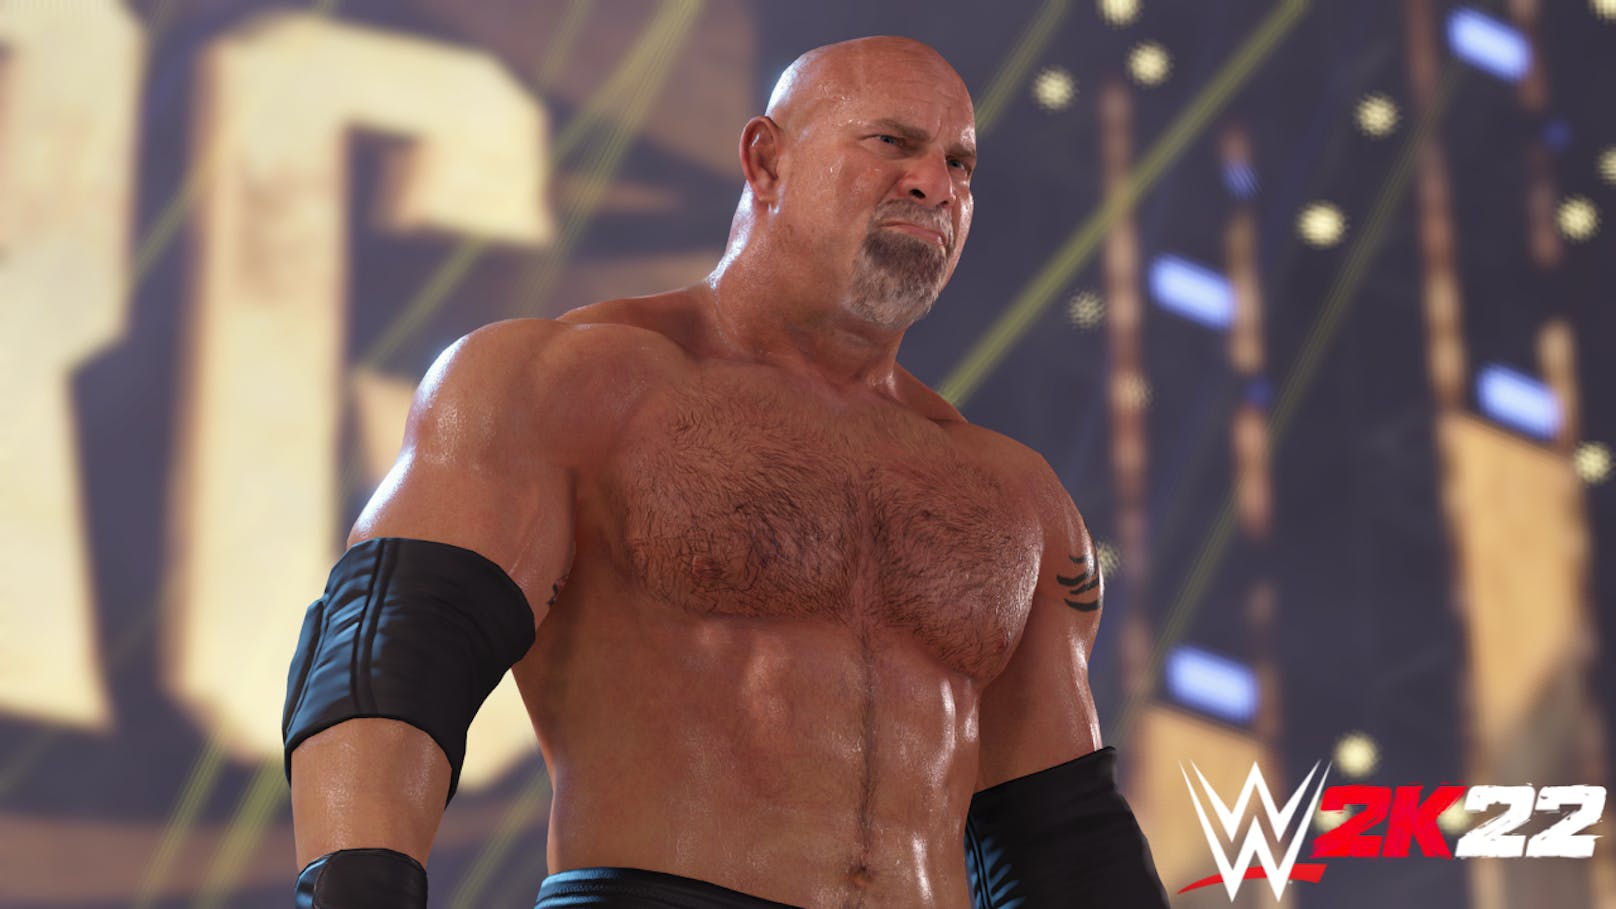 2K enthüllt Top 10 der Features und Innovationen für "WWE 2K22".